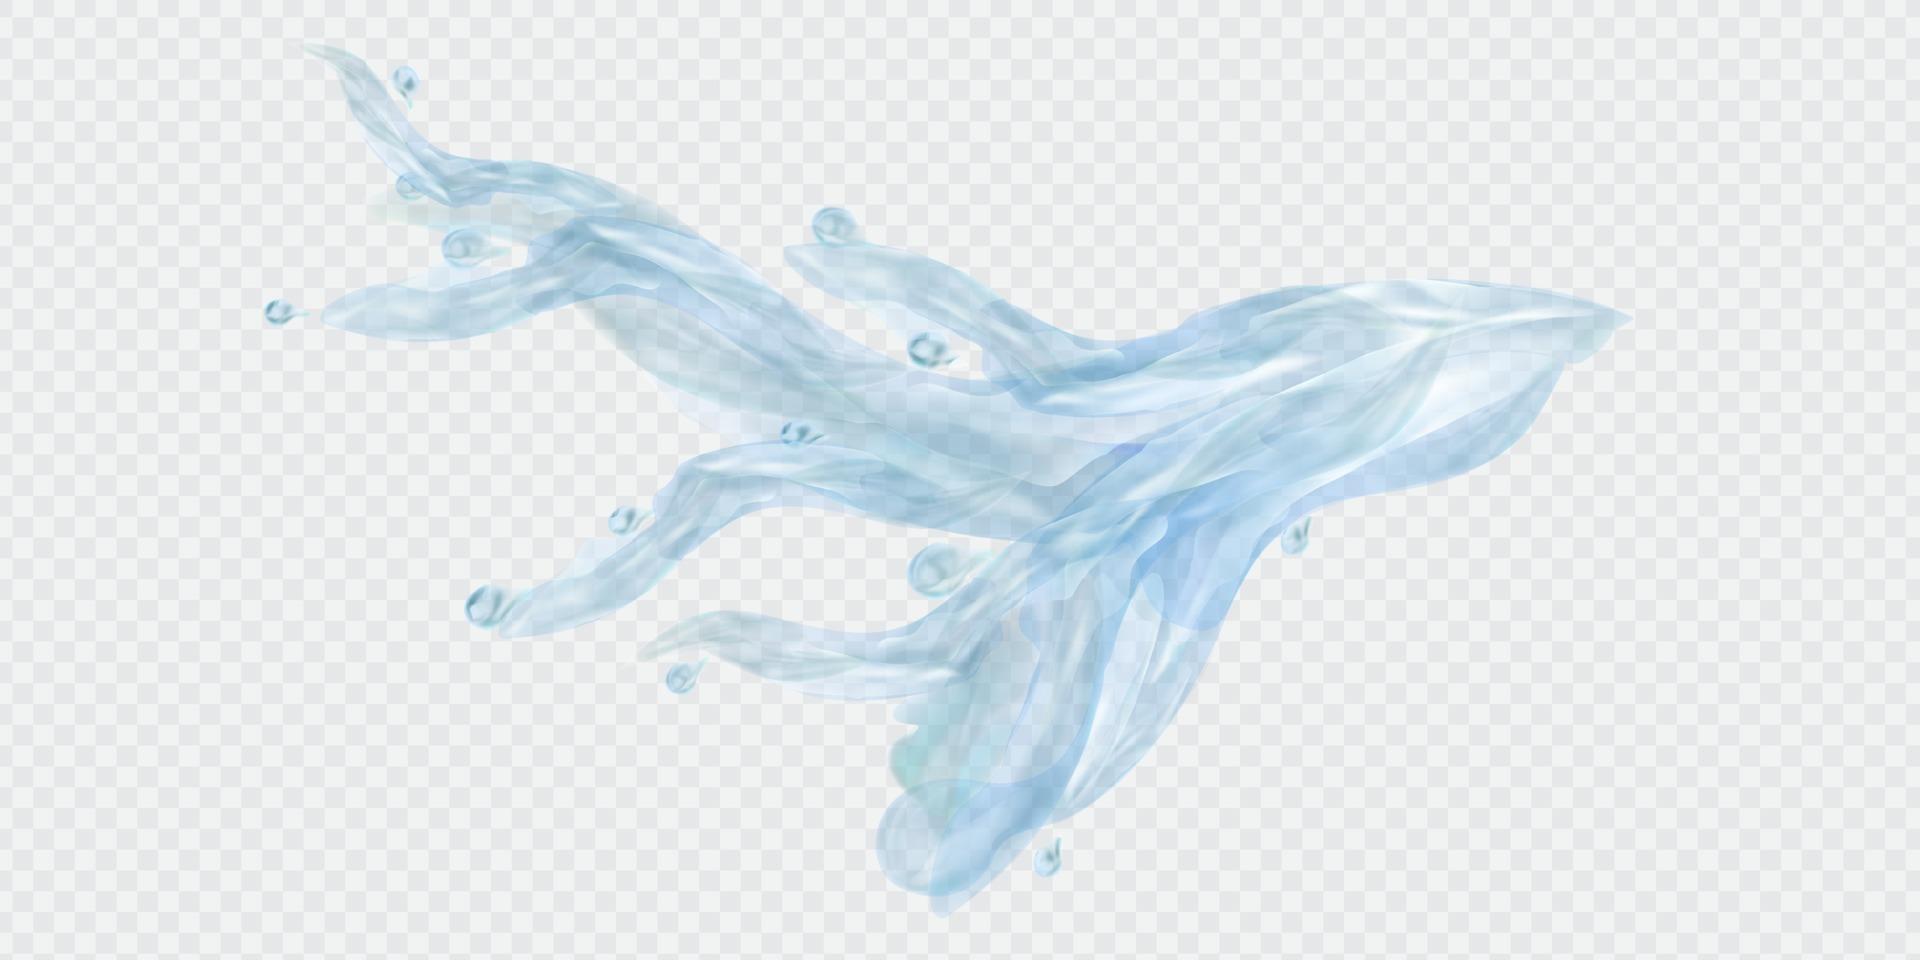 flux vectoriel réaliste d'eau avec des éclaboussures et des gouttes bleues.